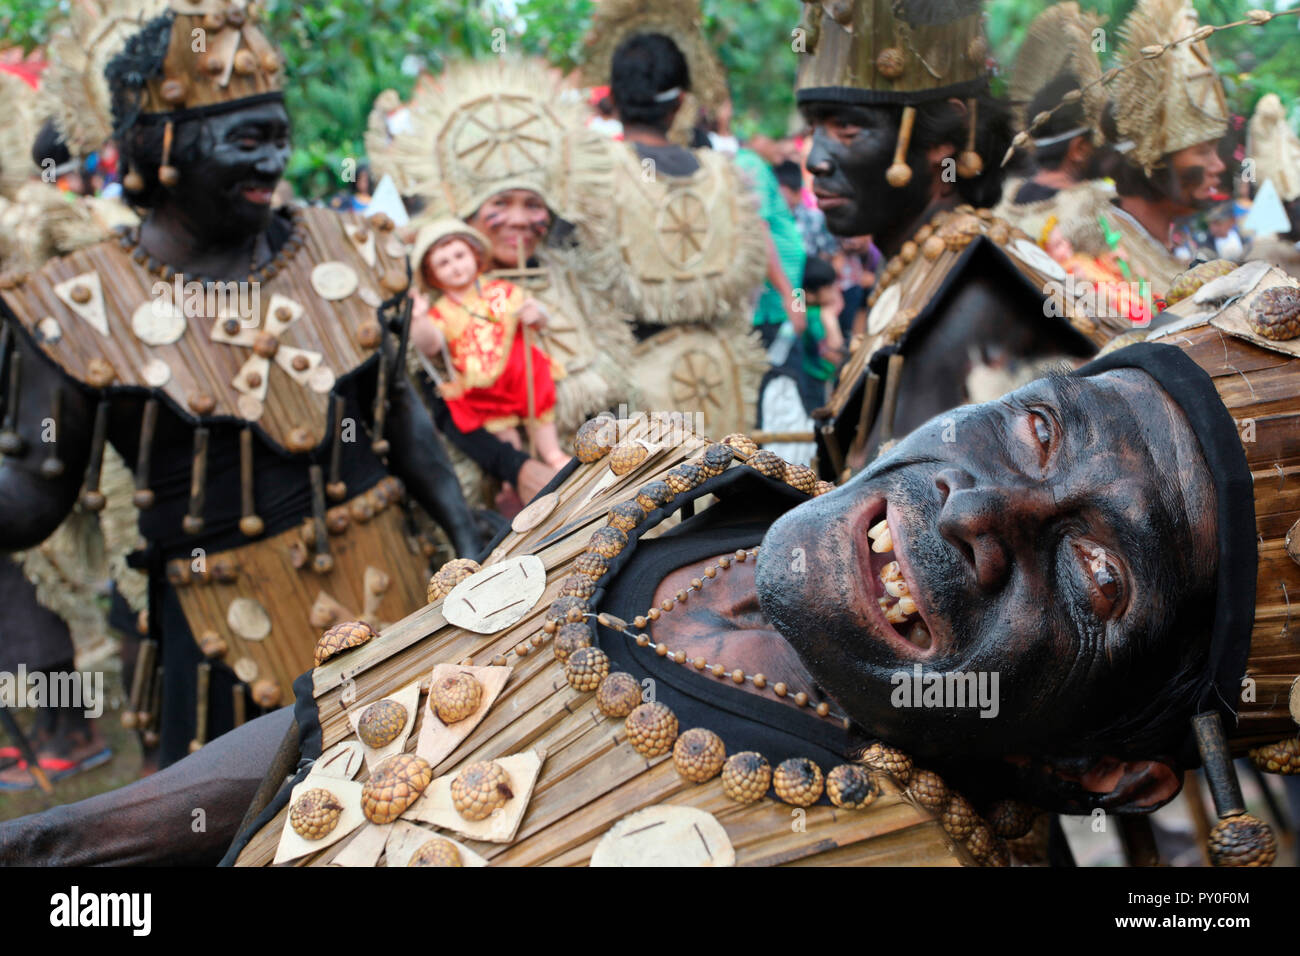 Vieil homme drôle en face de groupe de personnes, portant des costumes tribaux Ati à Atihan festival, Kalibo, Aklan, Philippines, l'île de Panay Banque D'Images